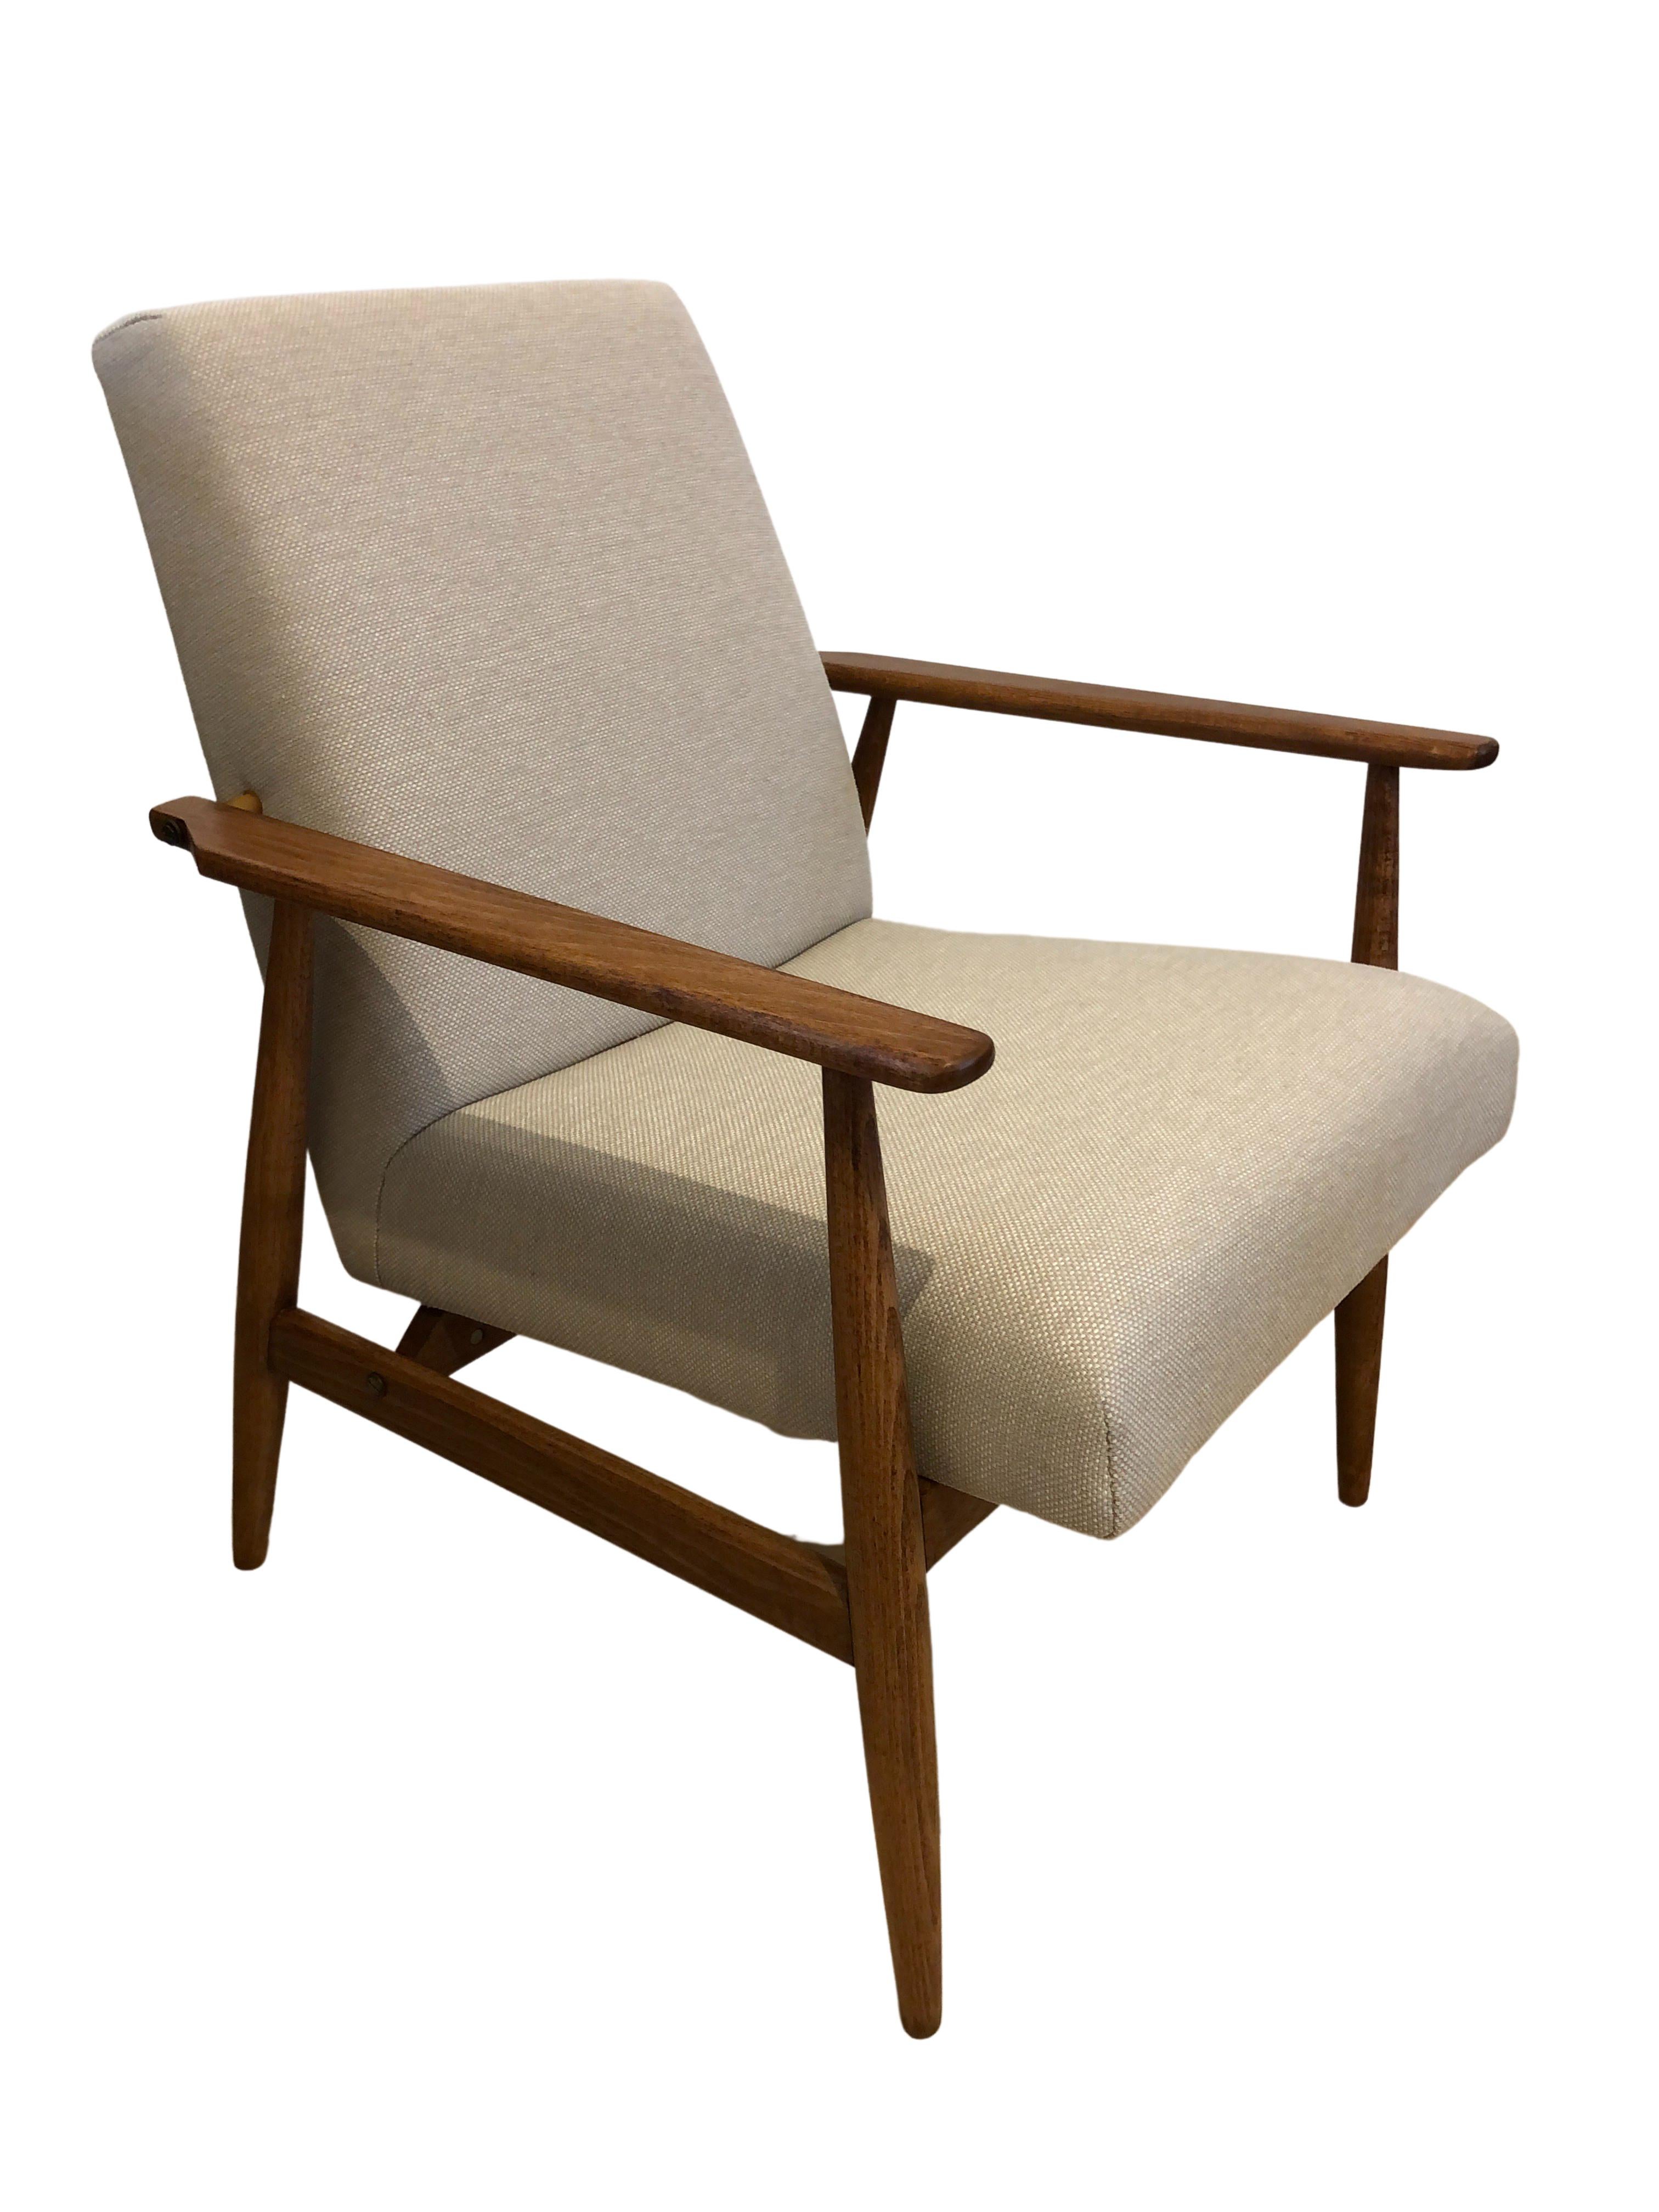 Das Set aus zwei Sesseln wurde von Henryk Lis entworfen. Die Struktur ist aus Buchenholz in einer warmen Walnussfarbe gefertigt und mit einem seidenmatten Lack überzogen. Die Polsterung ist aus schwerem Baumwoll- und Leinenstoff in Beige. Die